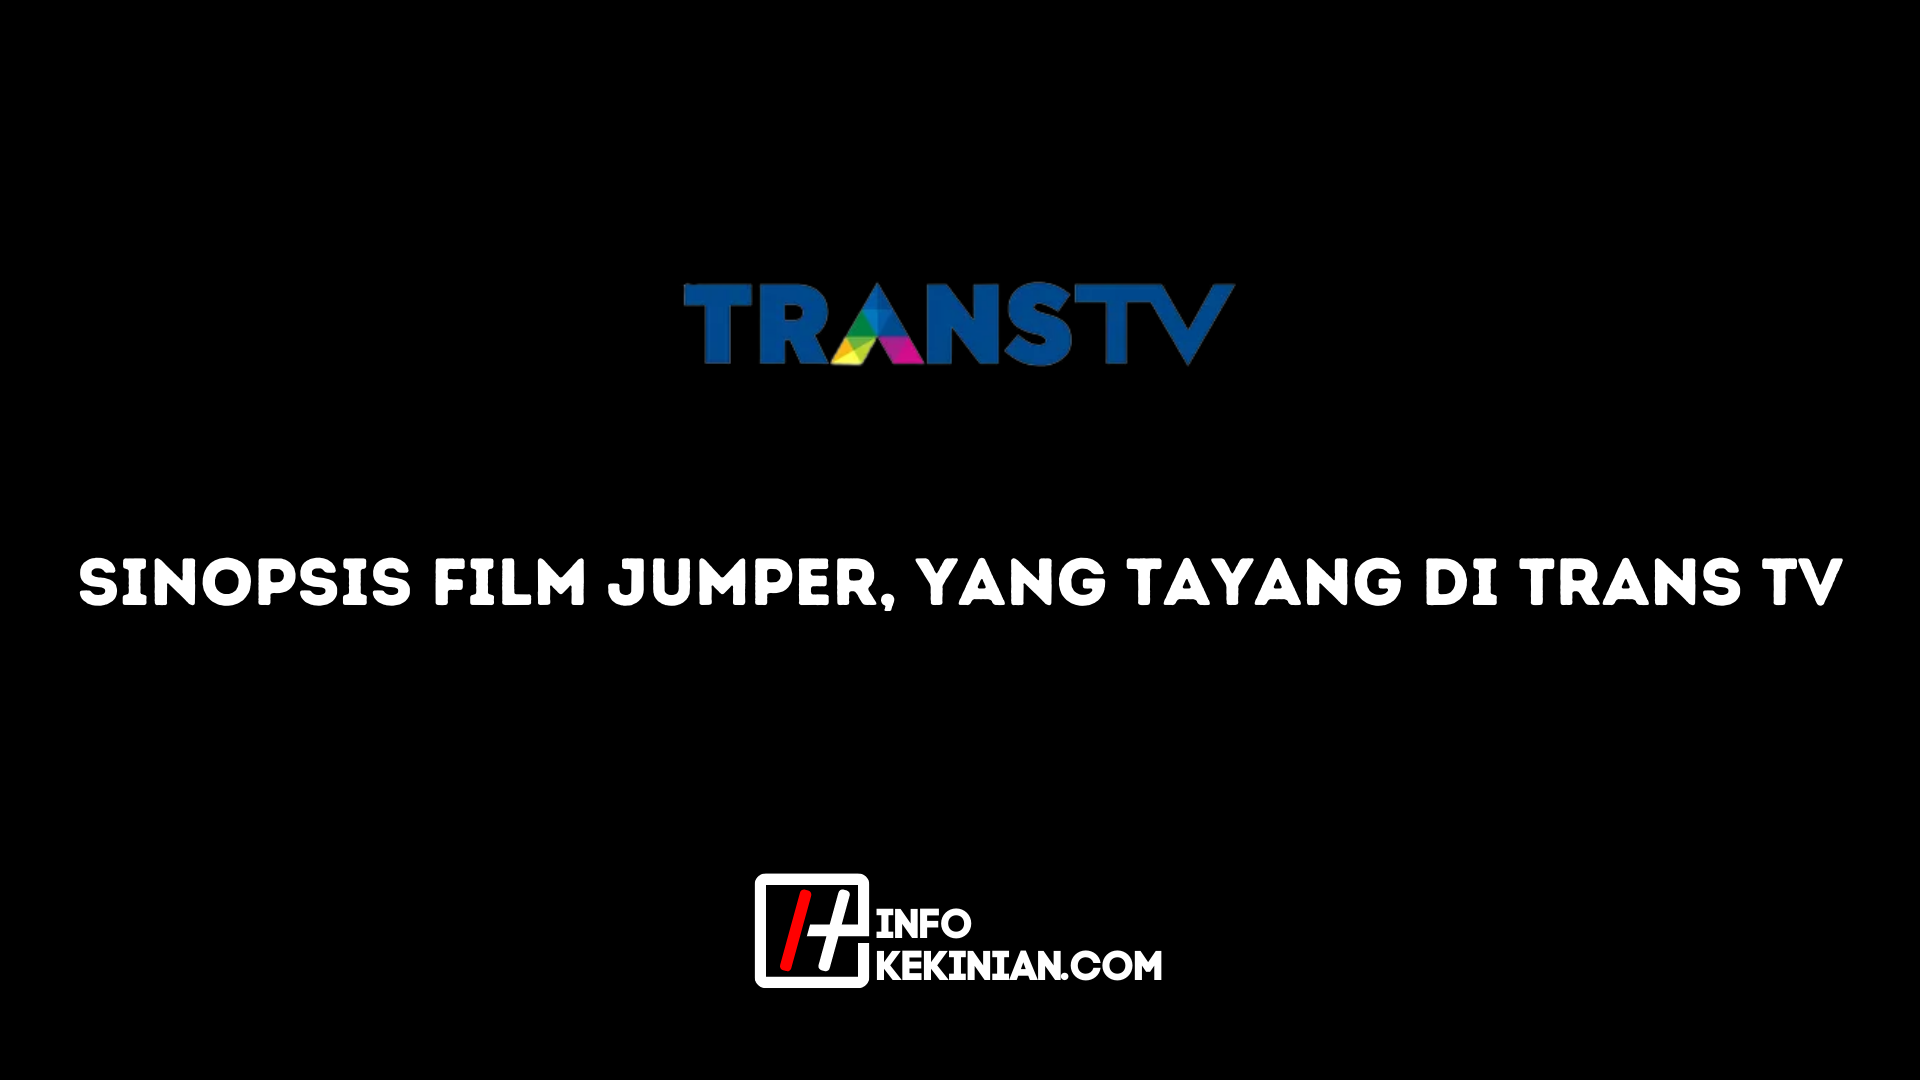 Synopsis du film Jumper diffusé sur Trans Tv